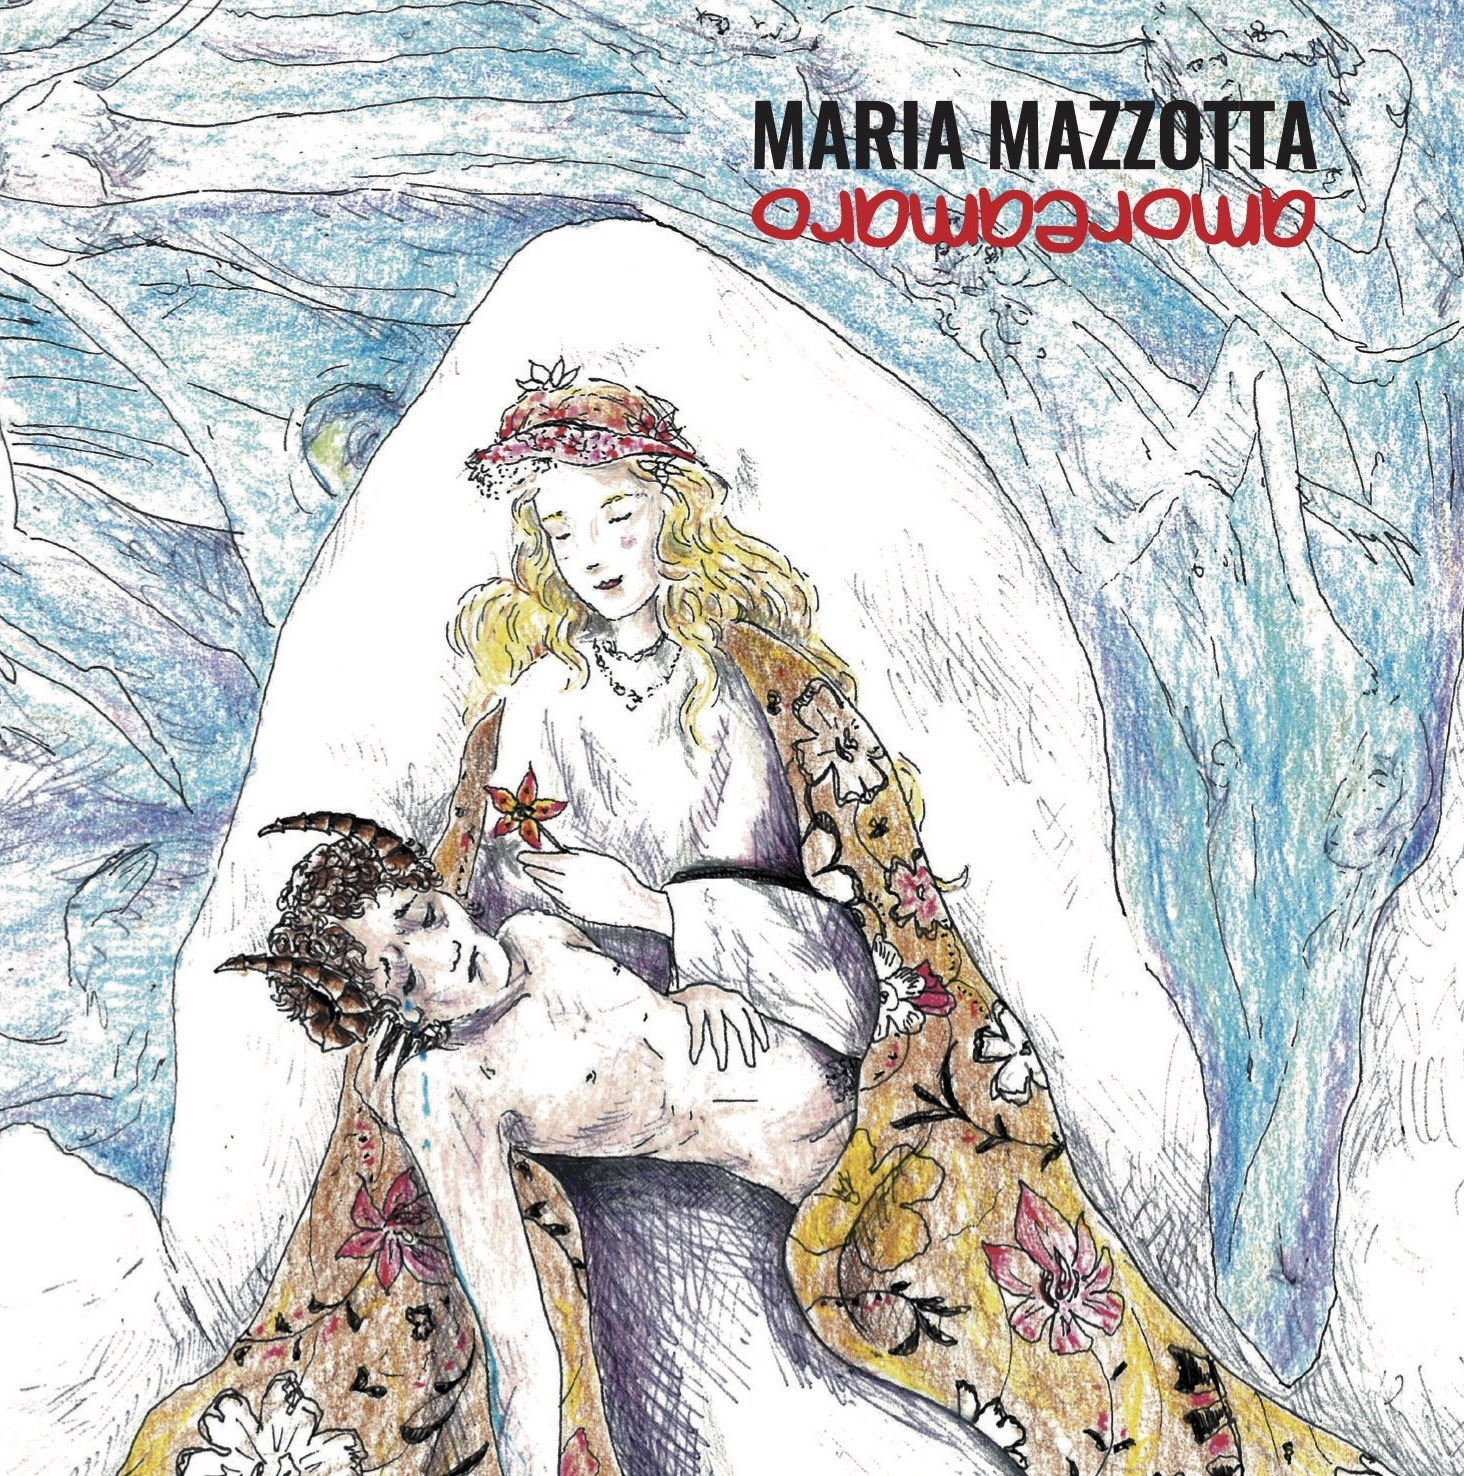 AMOREAMARO, il nuovo album di Maria Mazotta per il secondo mese nella Top10 delle classifiche internazionali di world music